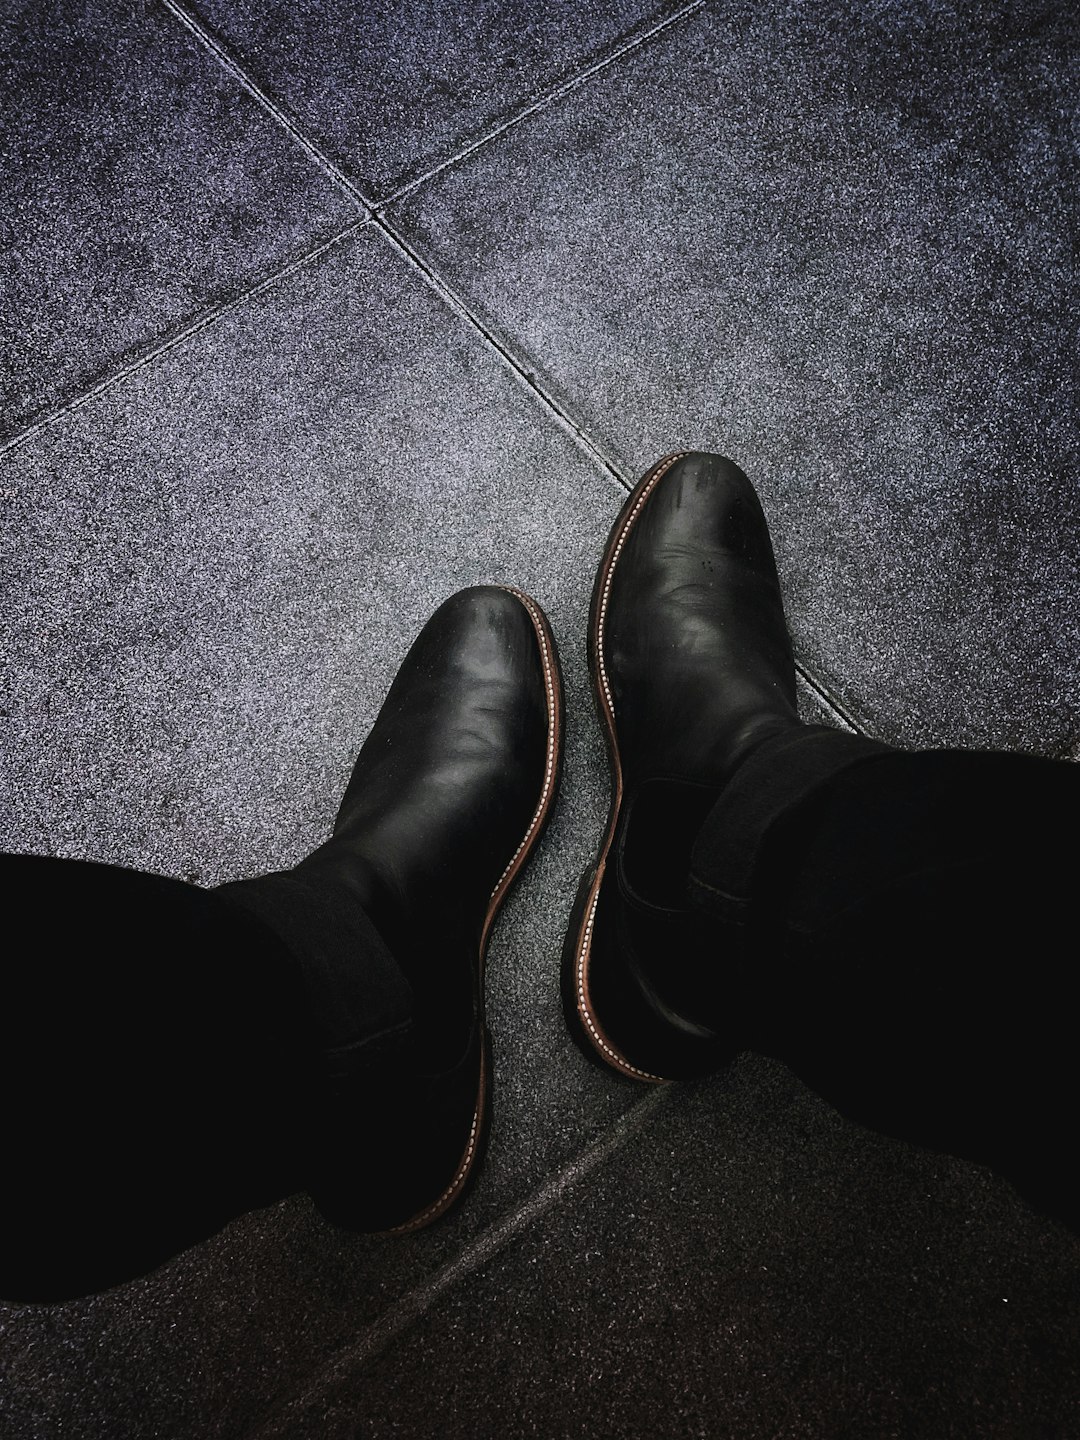 man wears black dress shoes